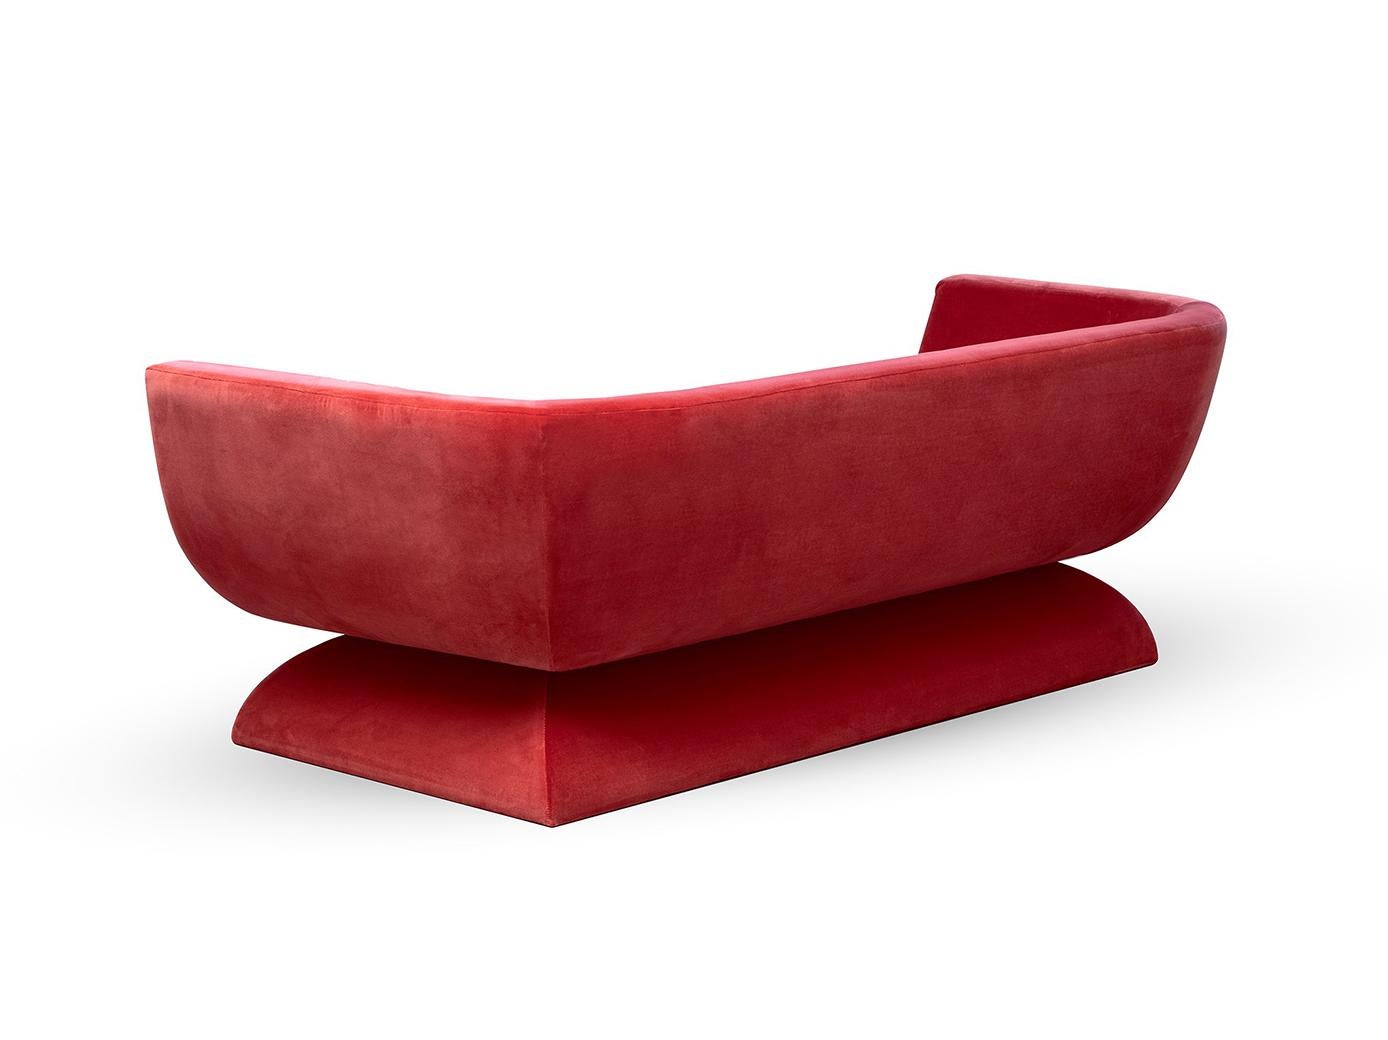 Oscar-Sofa

Inspiriert von der Poesie der geschwungenen Linien der Architektur Oscar Niemeyers, besticht das Sofa Oscar durch seine sinnlichen und frei fließenden Kurven. Wie Niemeyer einst sagte: 